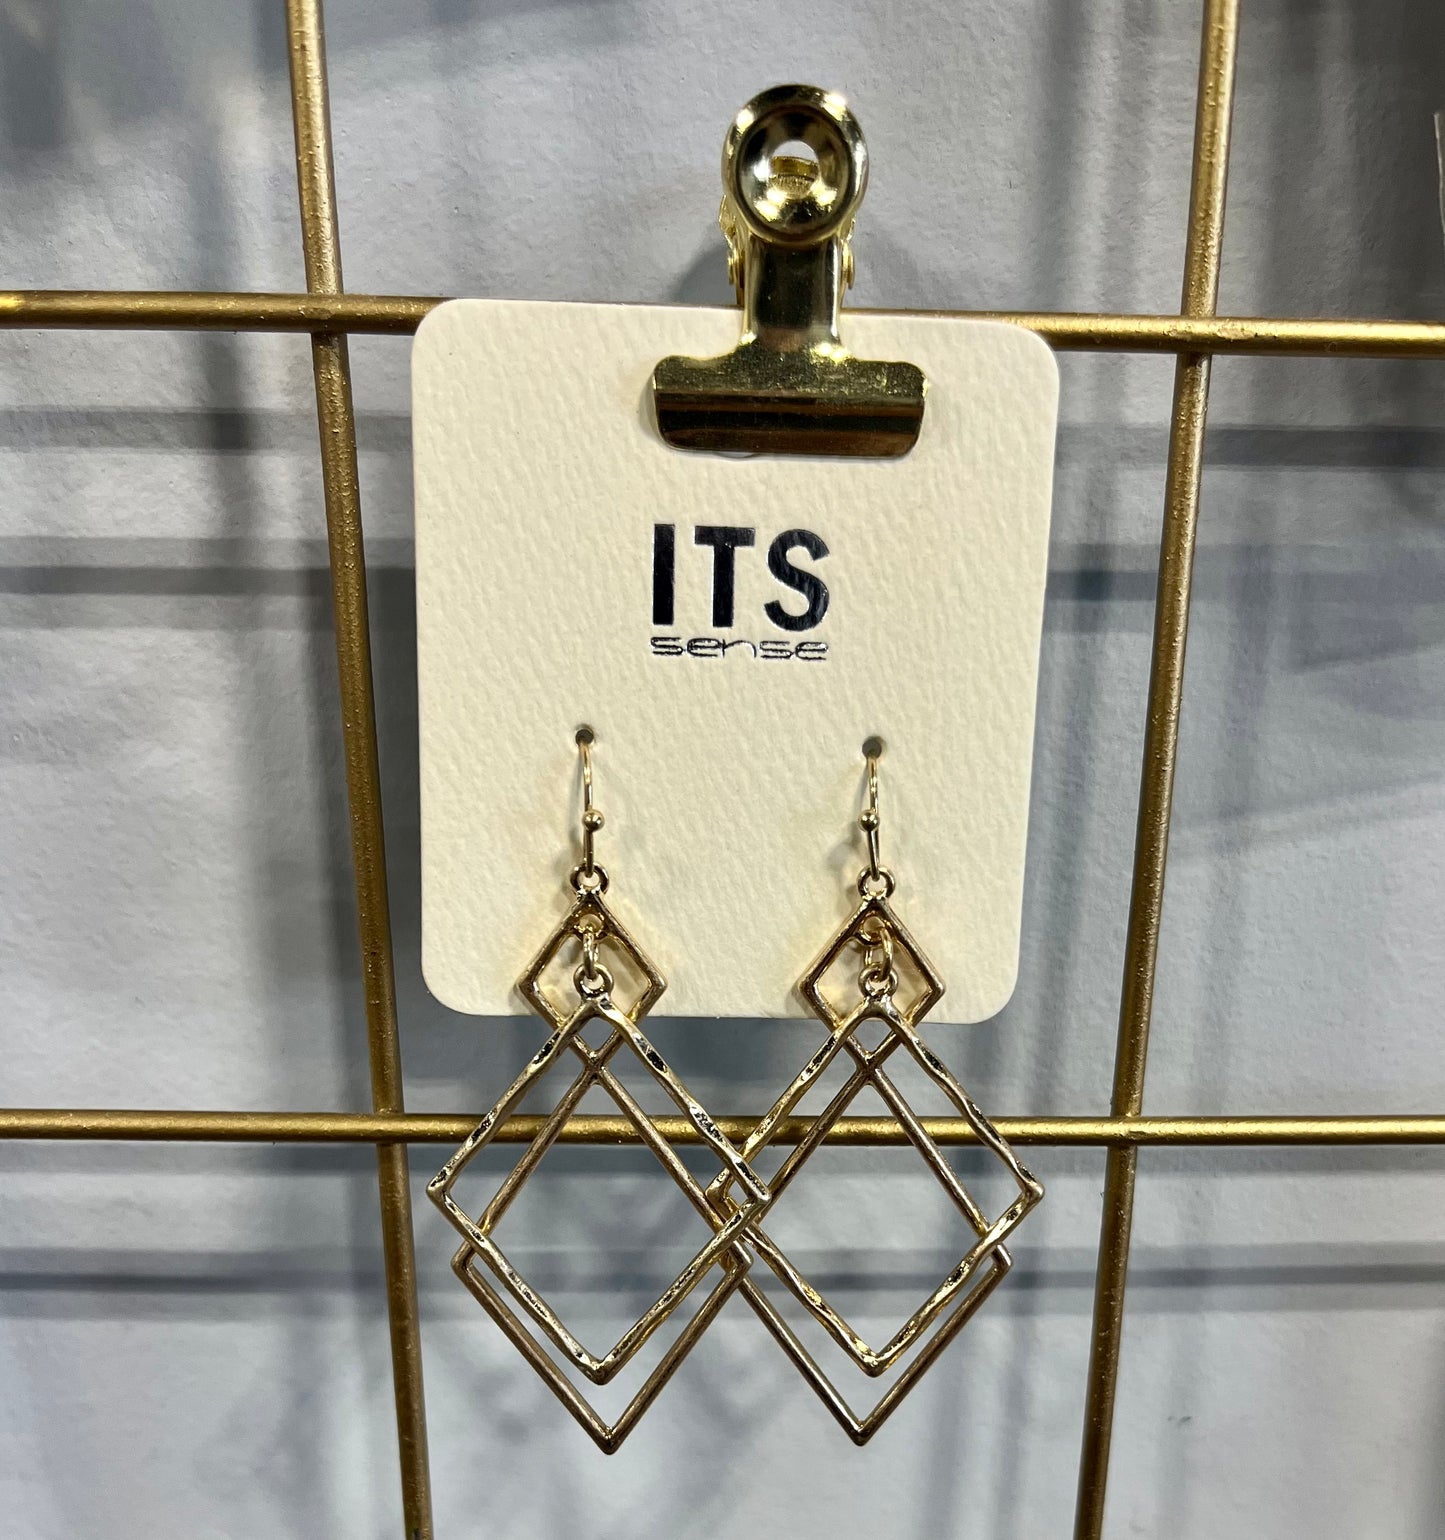 Double Diamond Earrings